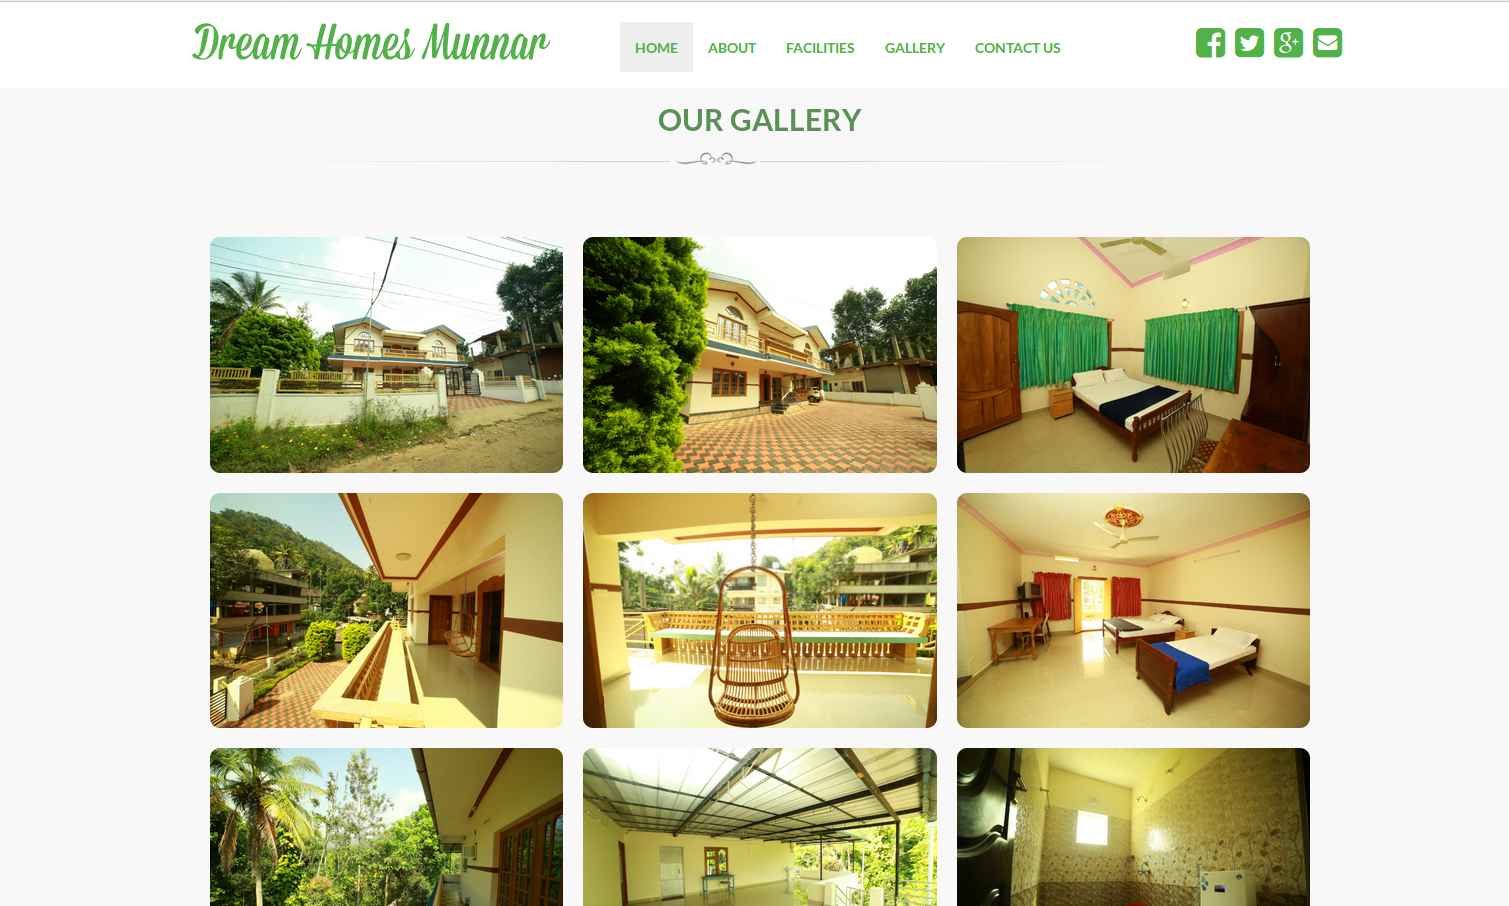 Dream Homes Munnar